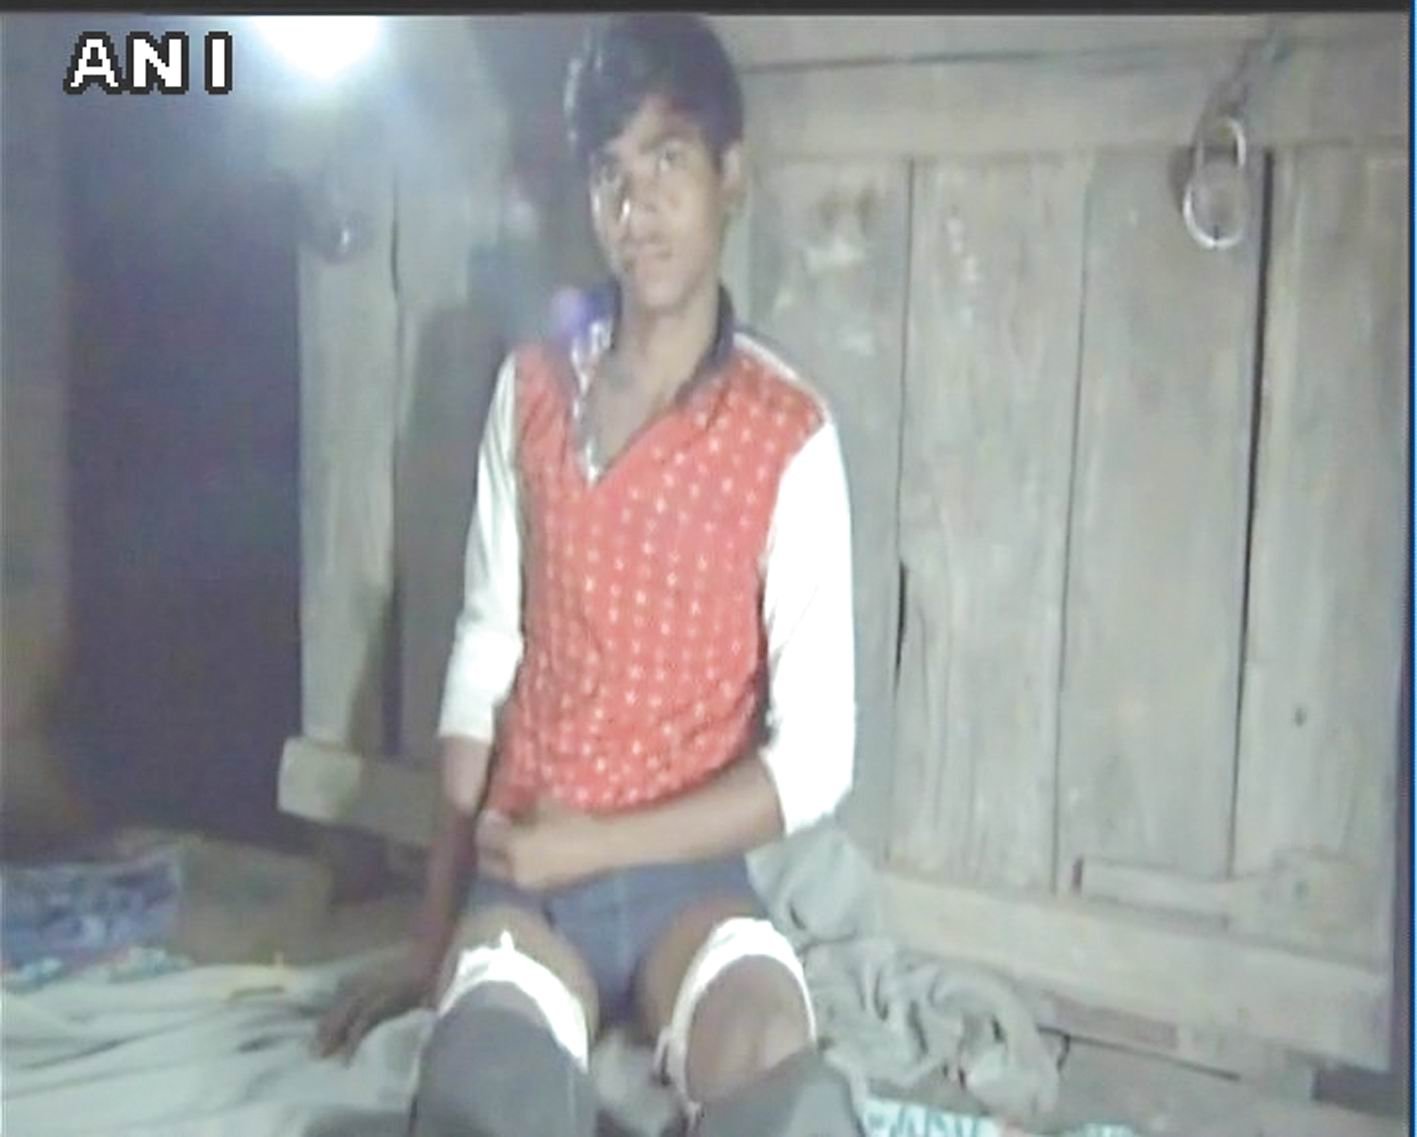 કાનપુર : ડ્રેસ પહેર્યા વગર શાળામાં જનાર  વિદ્યાર્થીના શાળા સંચાલકોએ પગ કાપી નાંખ્યા